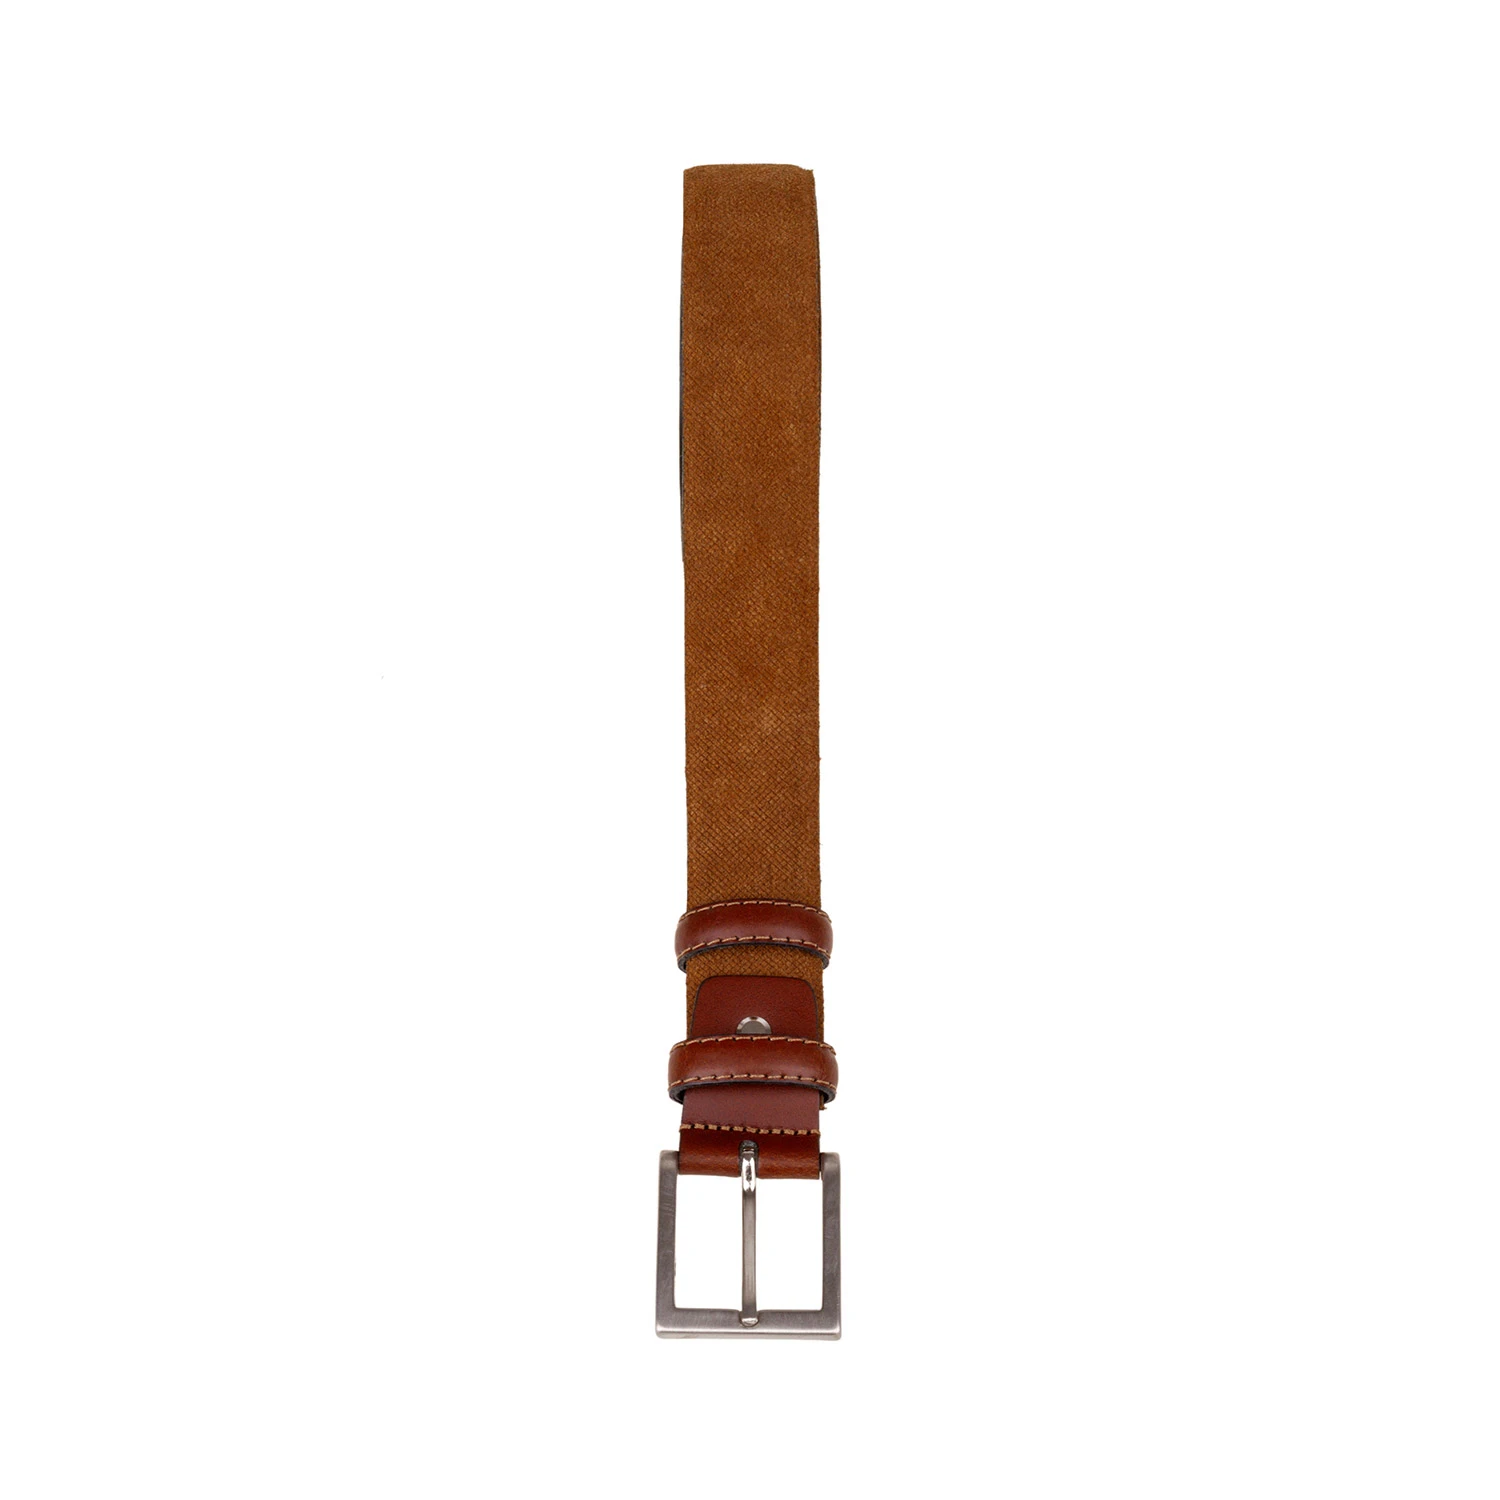 Cinturones para Hombre de Cuero, Fabricado en España, de 115cm, Marrón y